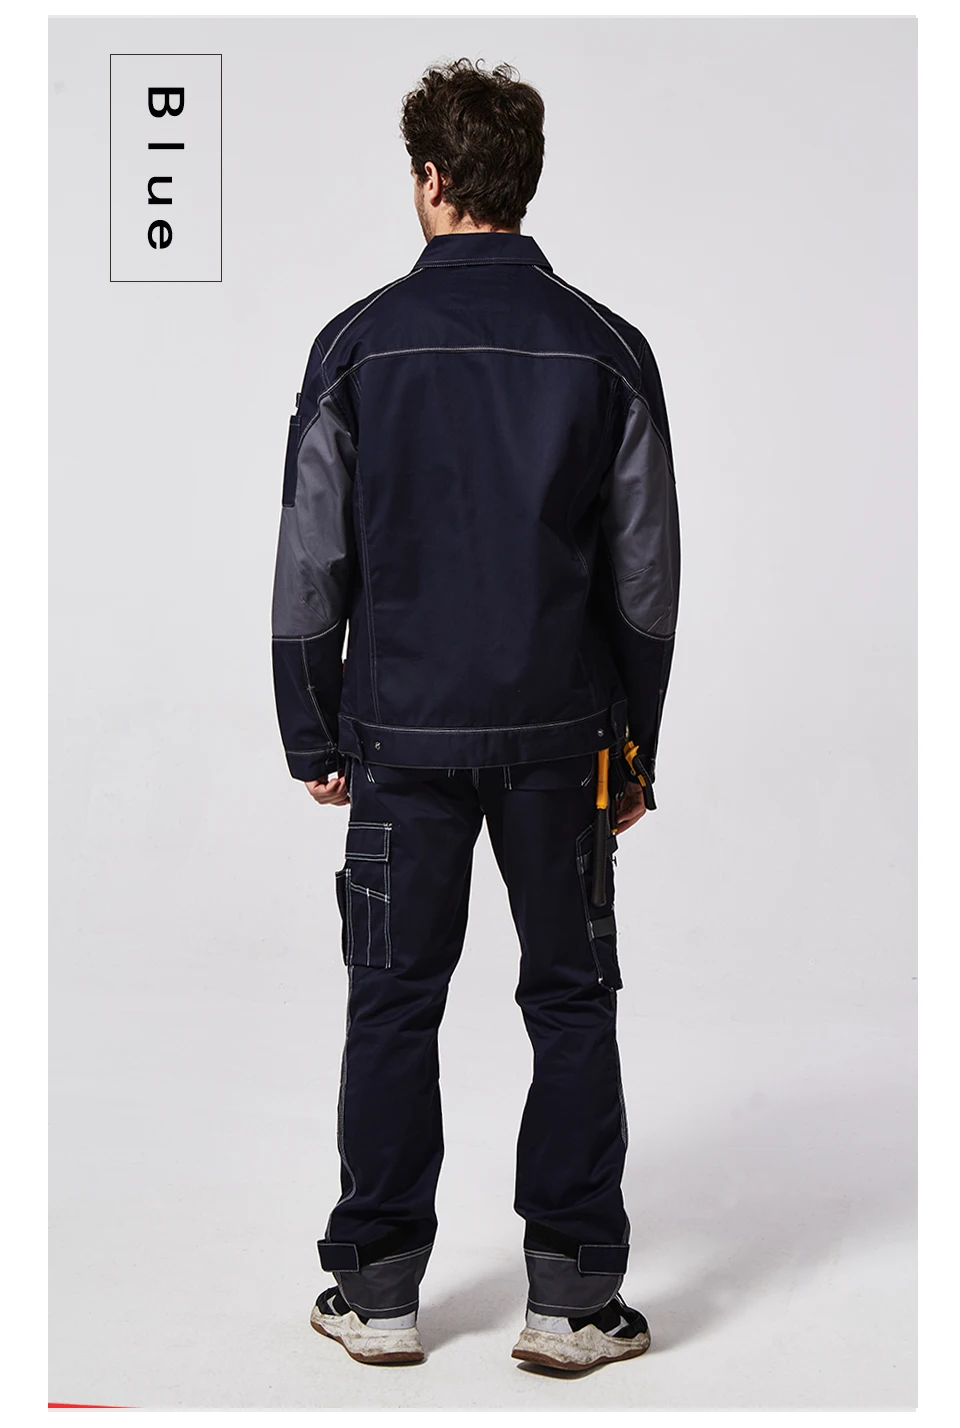 Bauskydd b212осенняя Рабочая куртка с большими карманами, Мужская рабочая одежда, Униформа, Мужская Рабочая куртка для механиков